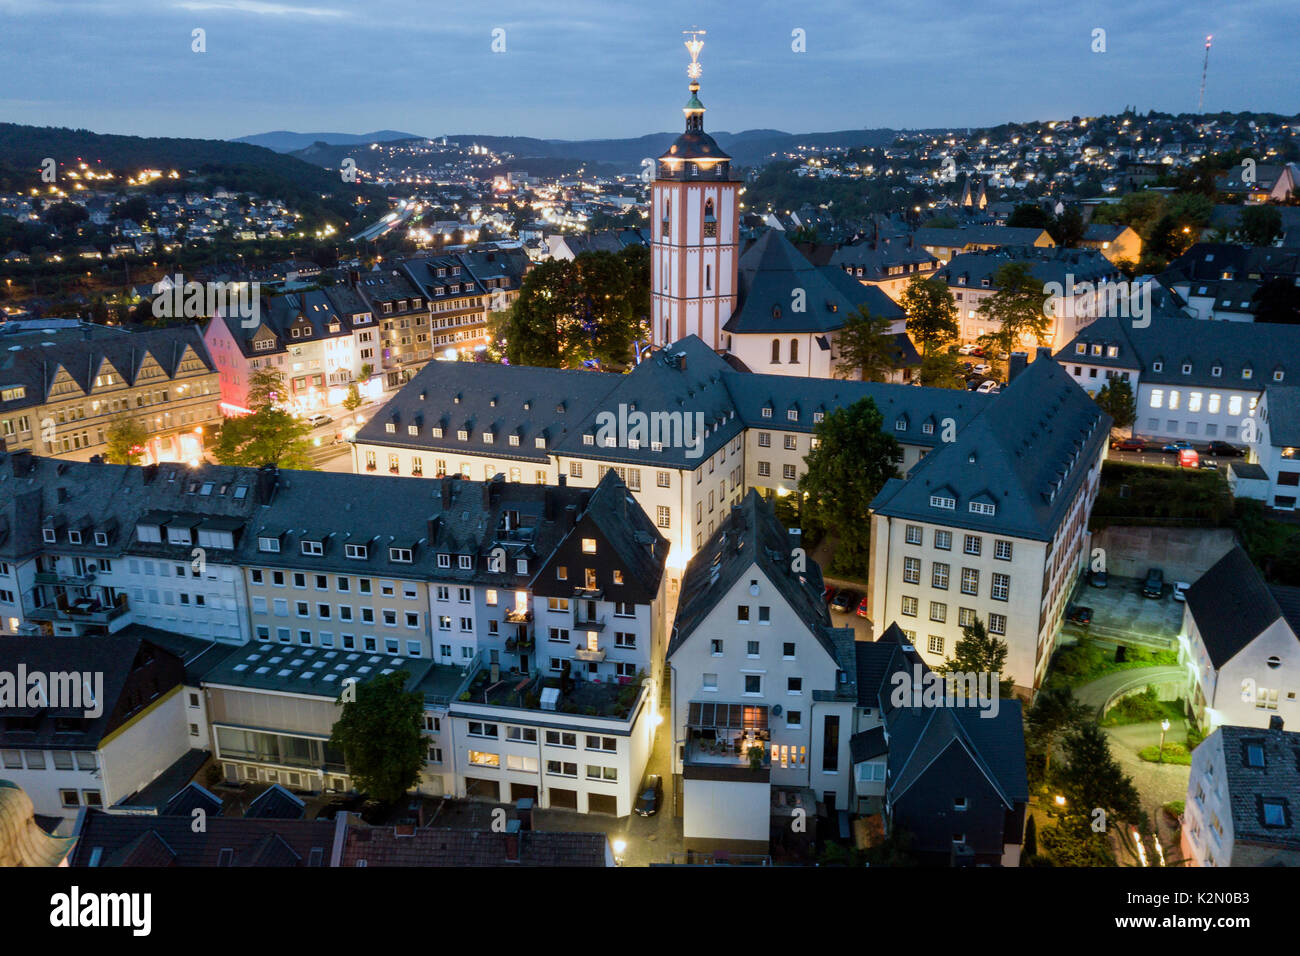 Vue aérienne sur la vieille ville de Siegen dans la nuit. Rhénanie du Nord-Westphalie, Allemagne Banque D'Images